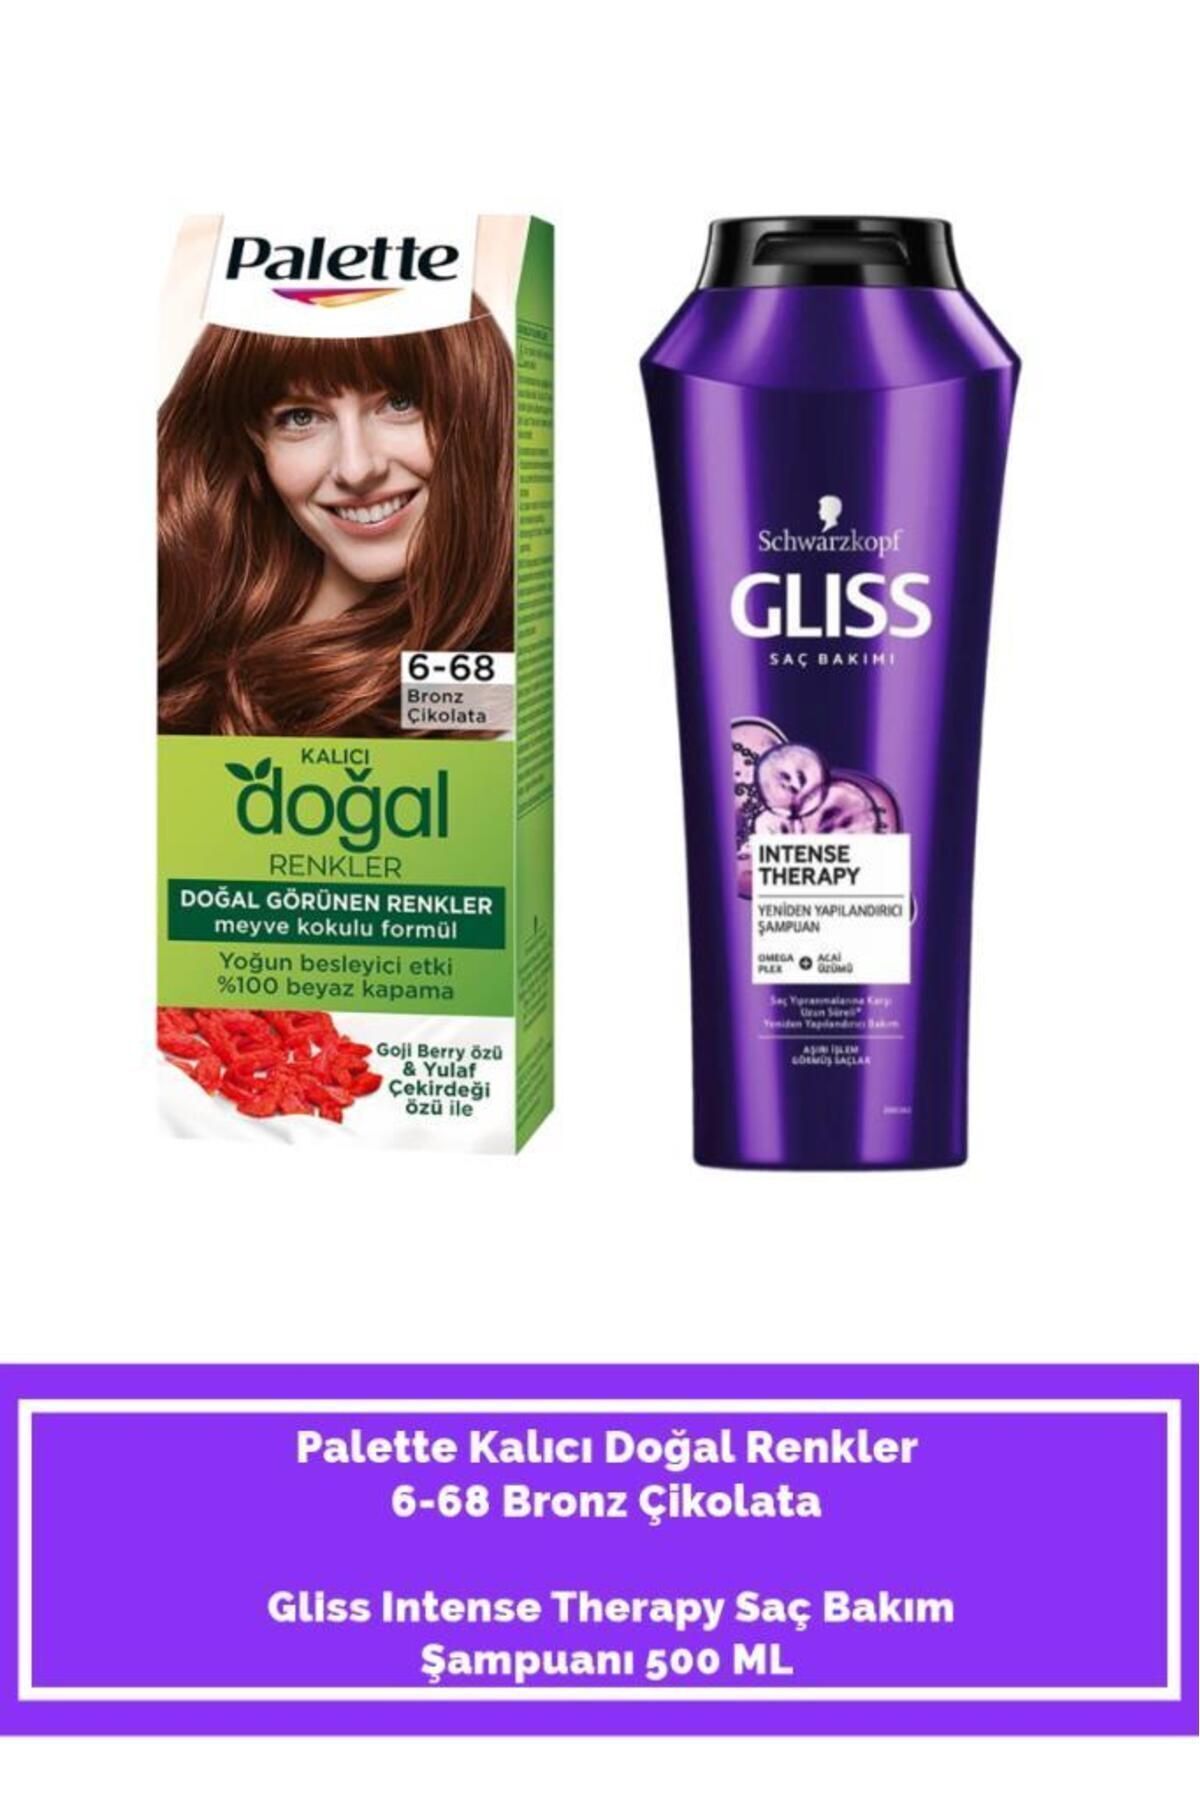 Palette Kalıcı Doğal Renkler 6-68 Bronz Çikolata Gliss Intense Therapy Saç Bakım Şampuanı 500 ml